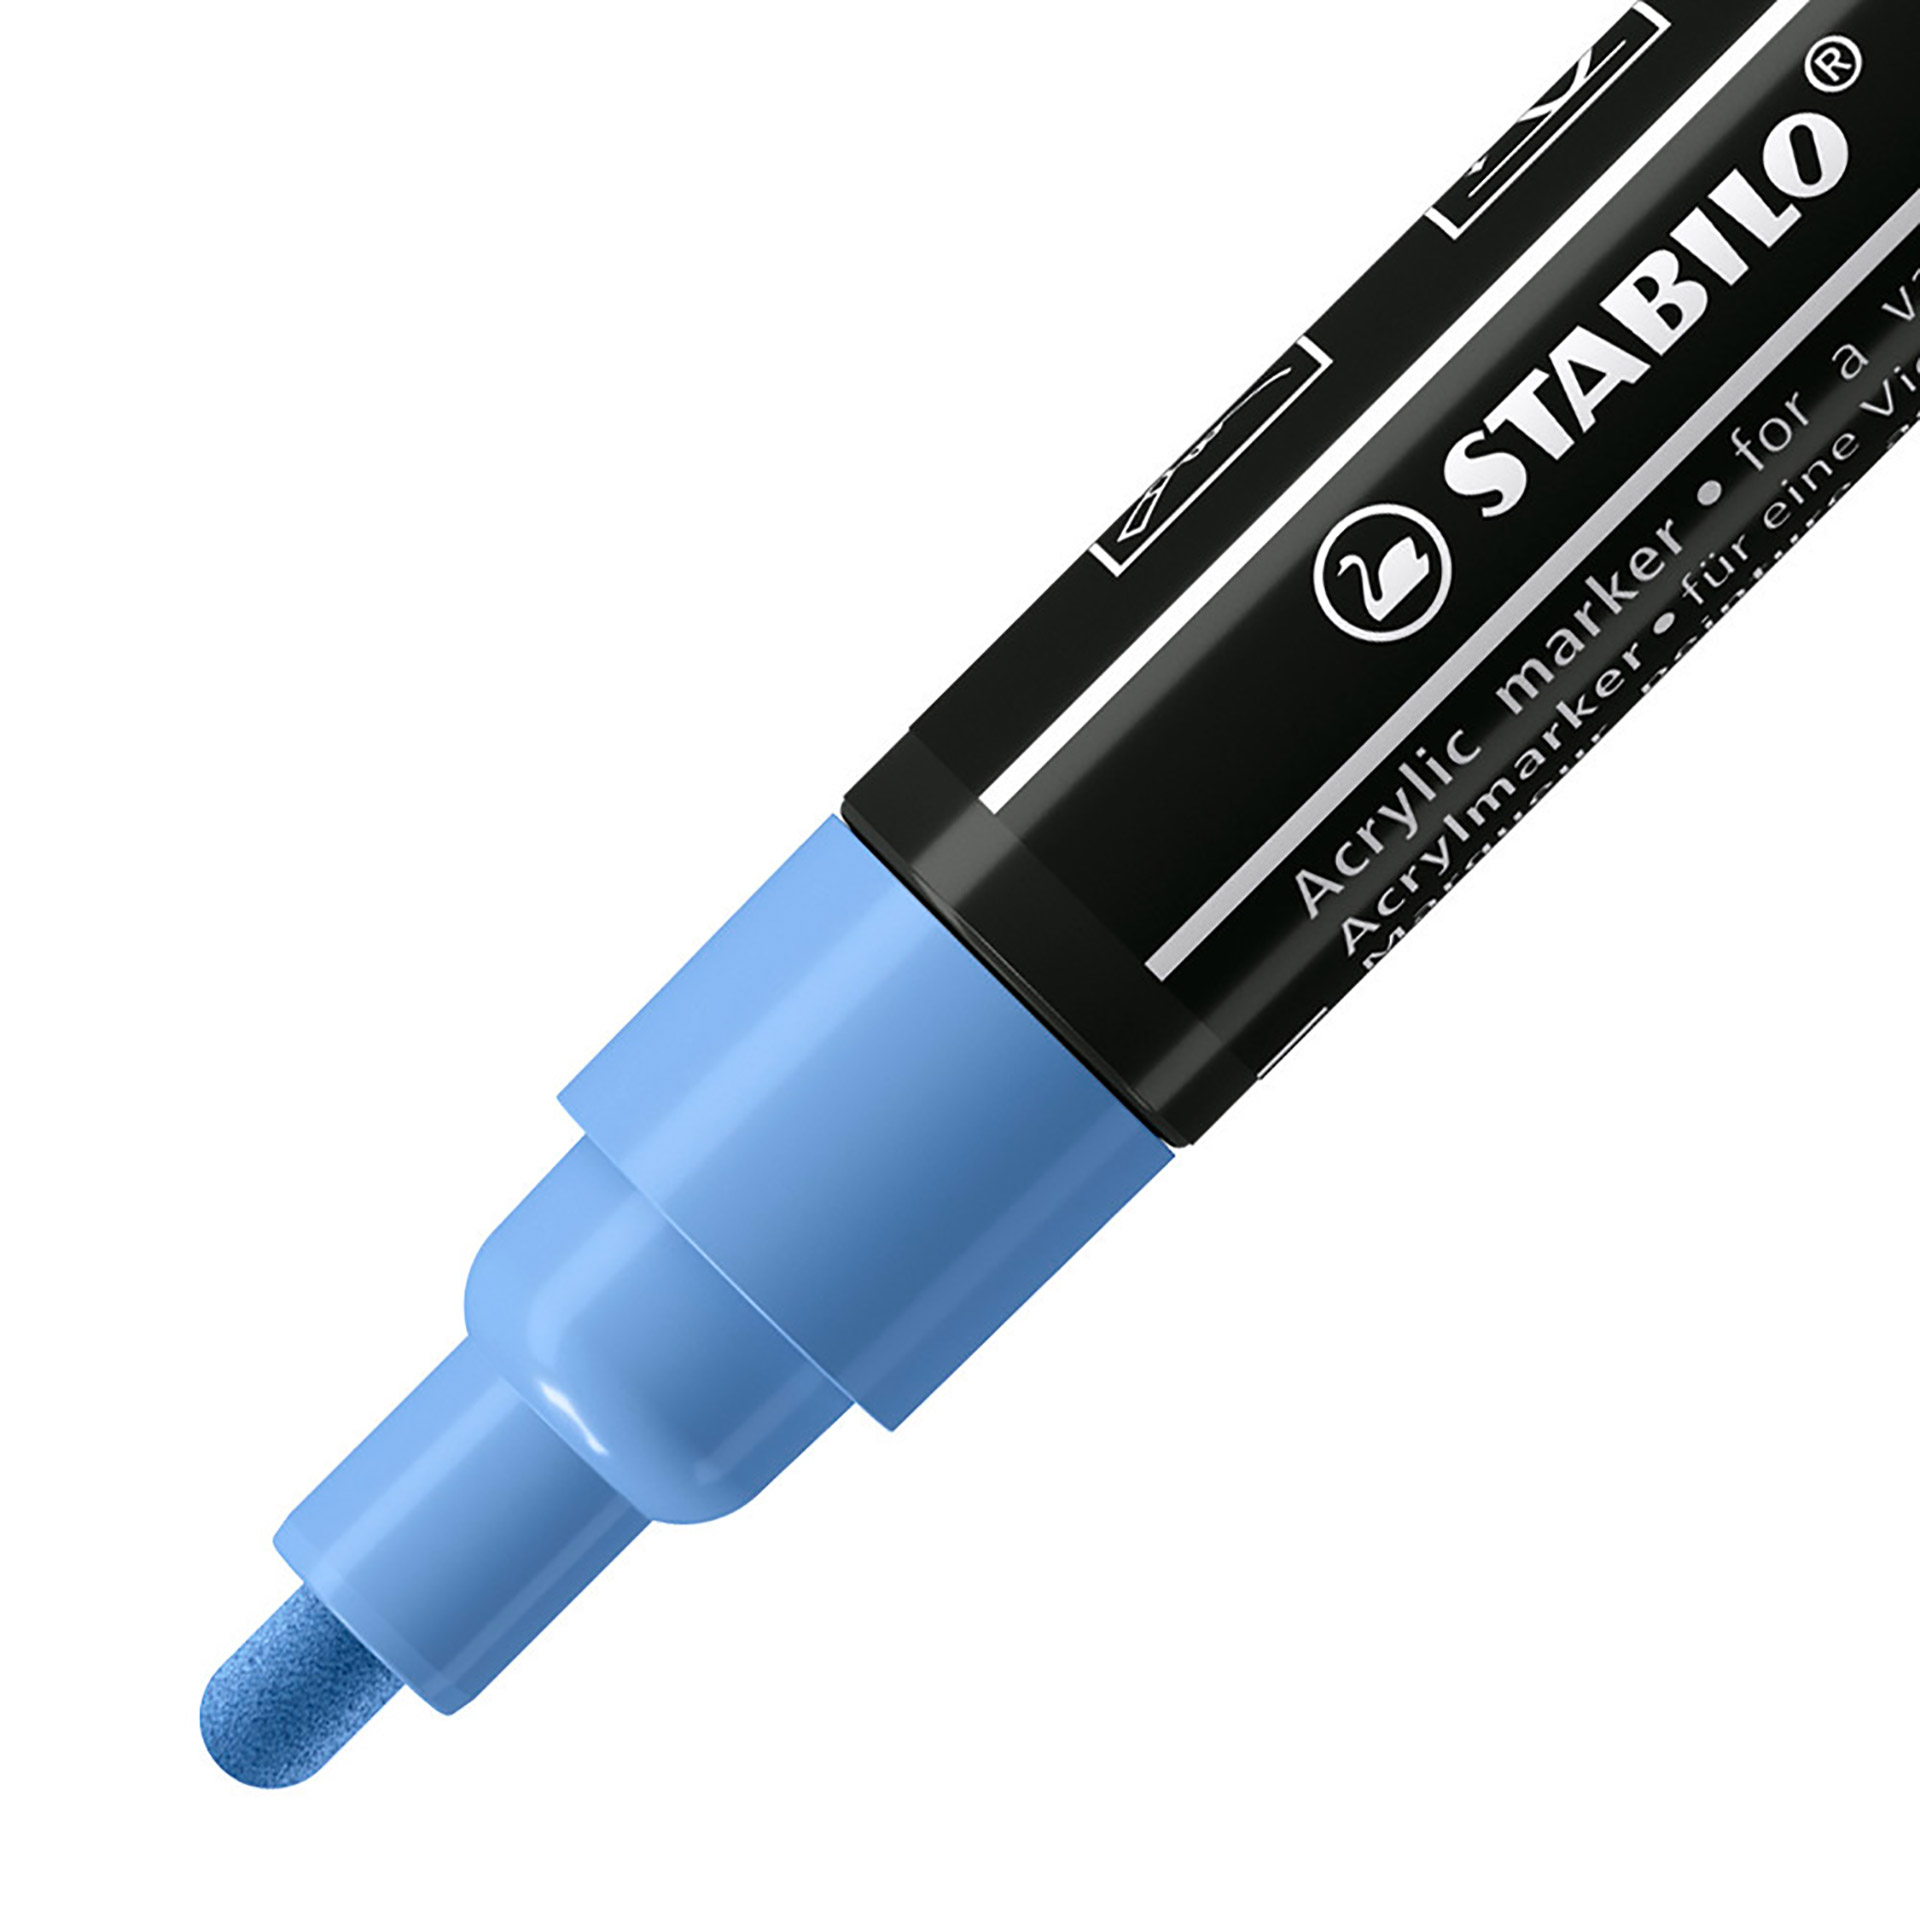 STABILO FREE Acrylic - T300 Punta rotonda 2-3mm - Confezione da 5 - Blu Cobalto, , large